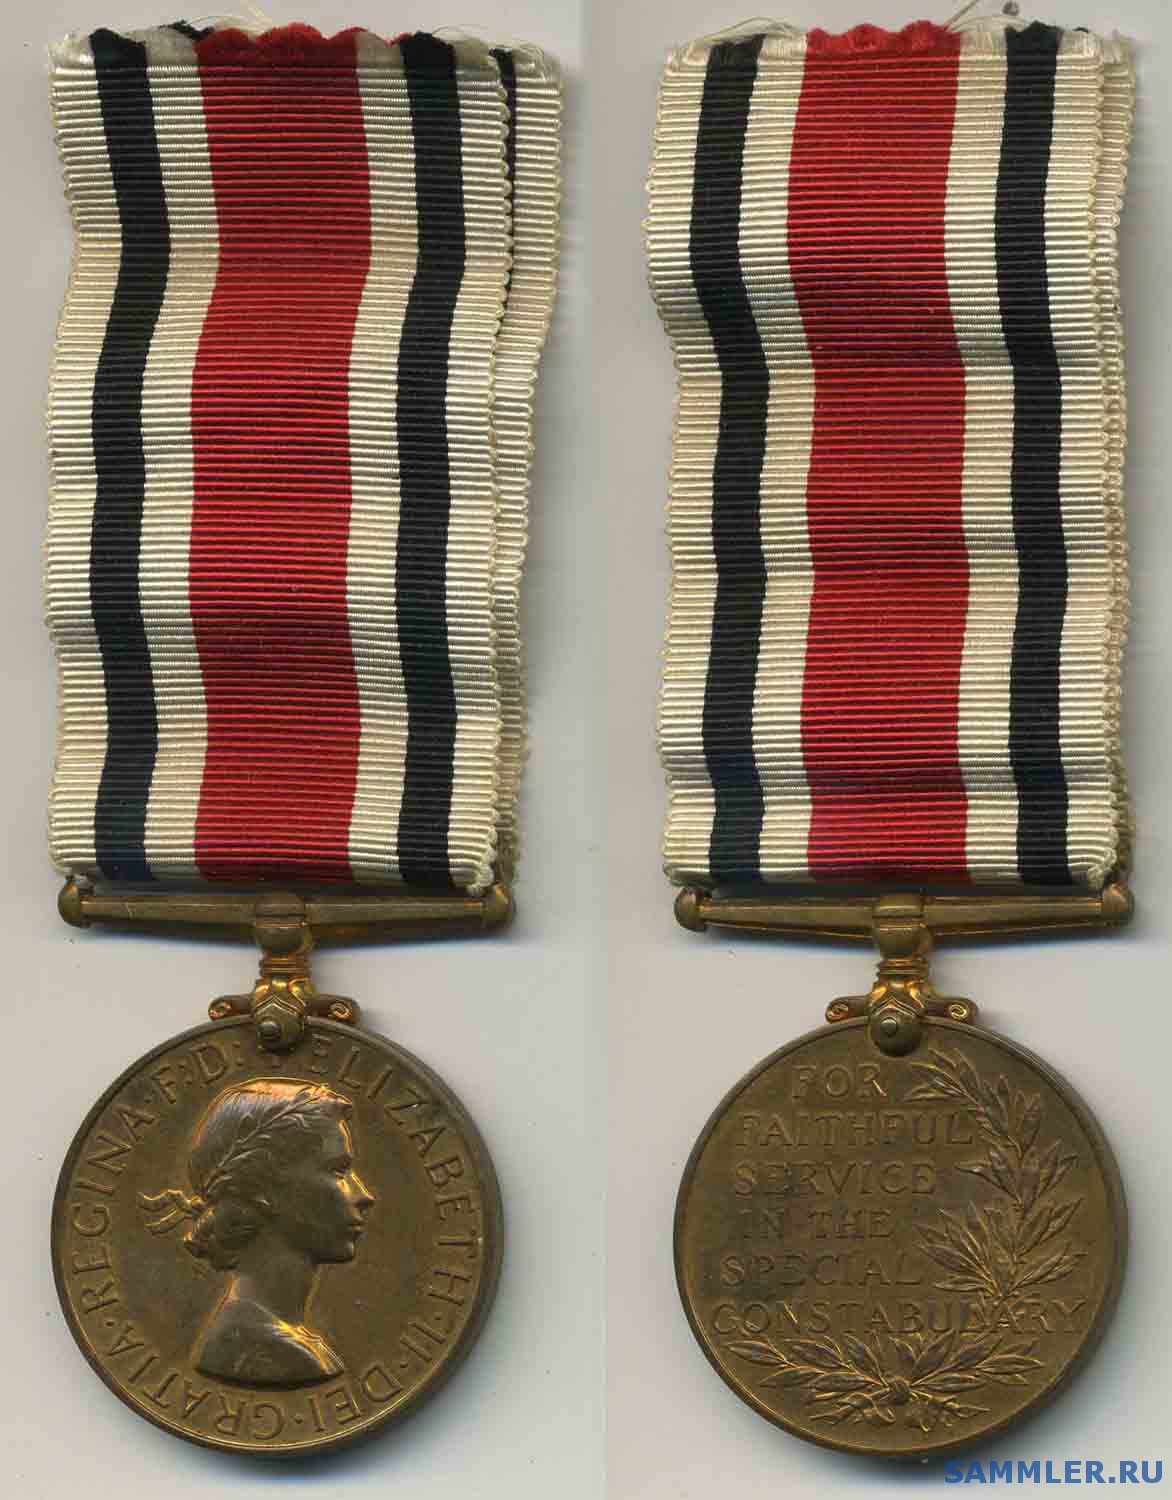 Special_Constabulary_LS_Medal_E_II_.jpg